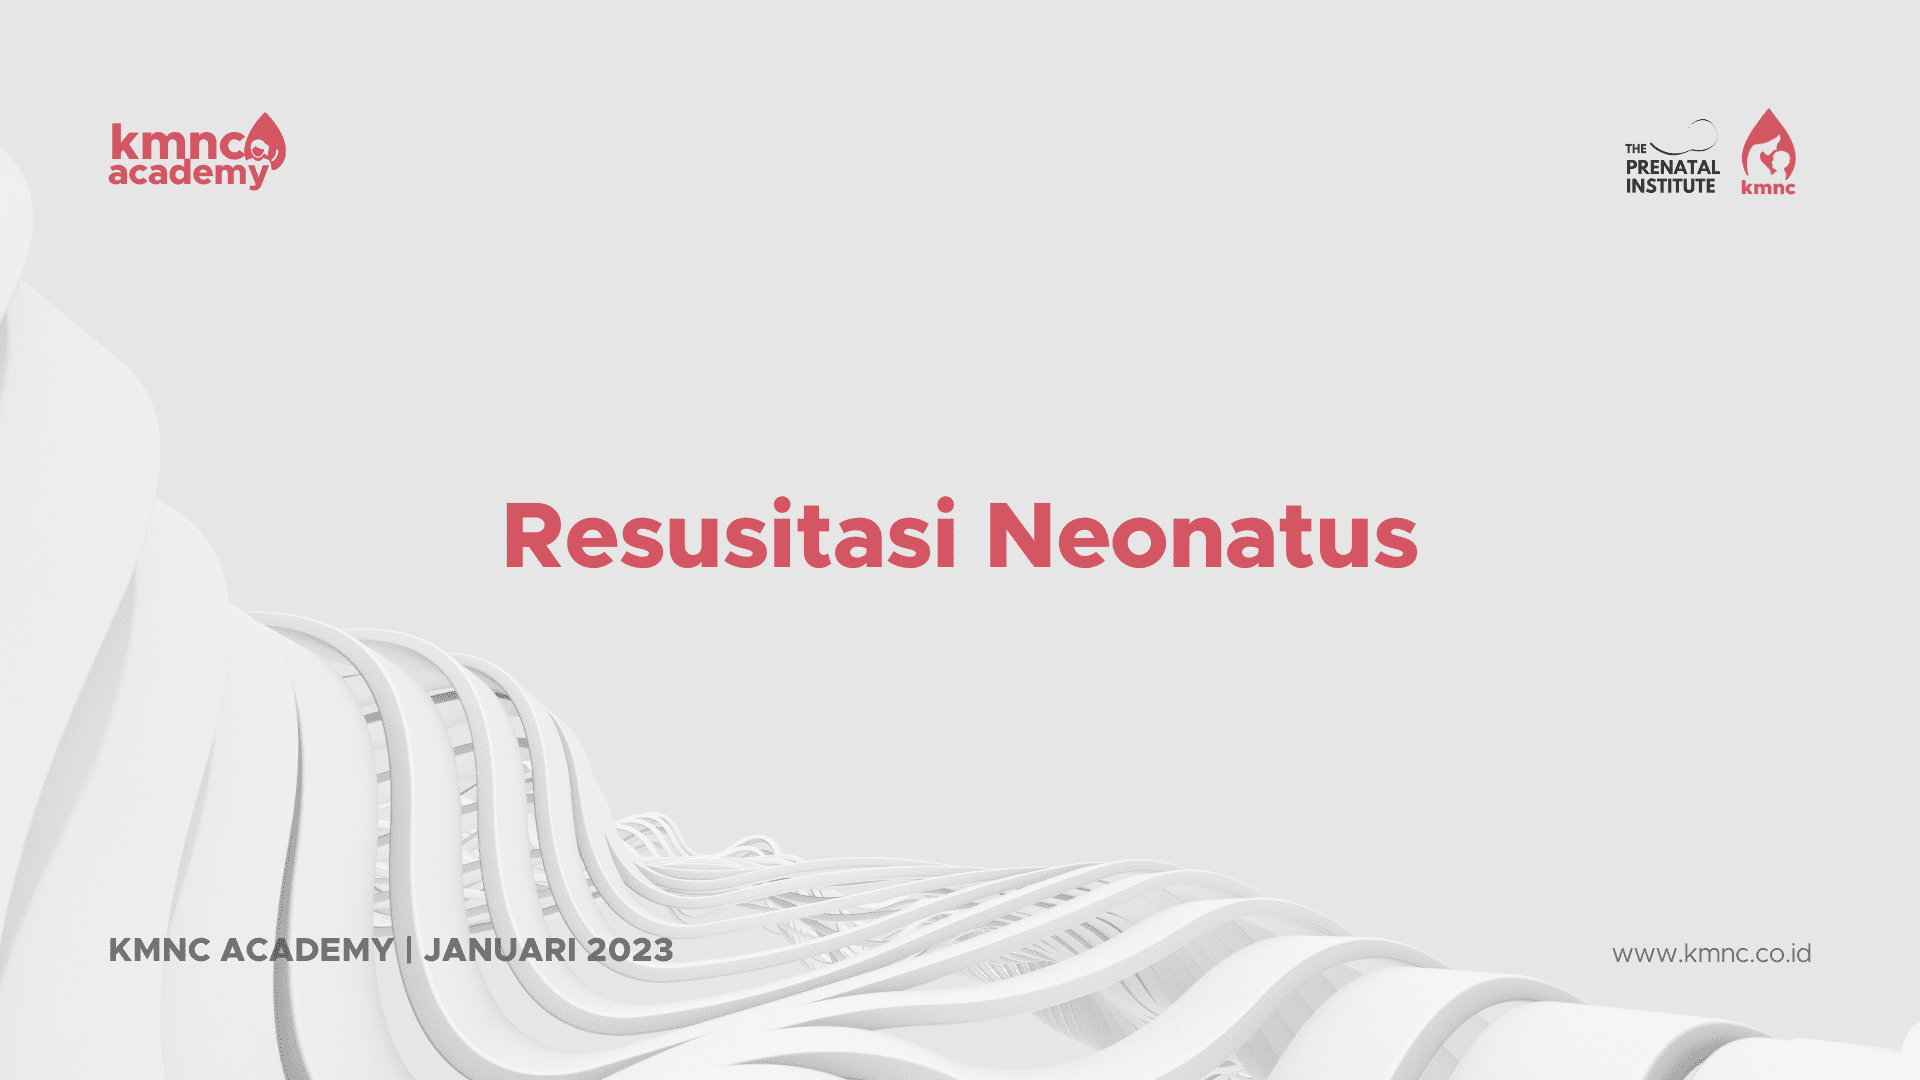 Protected: Resusitasi Neonatus